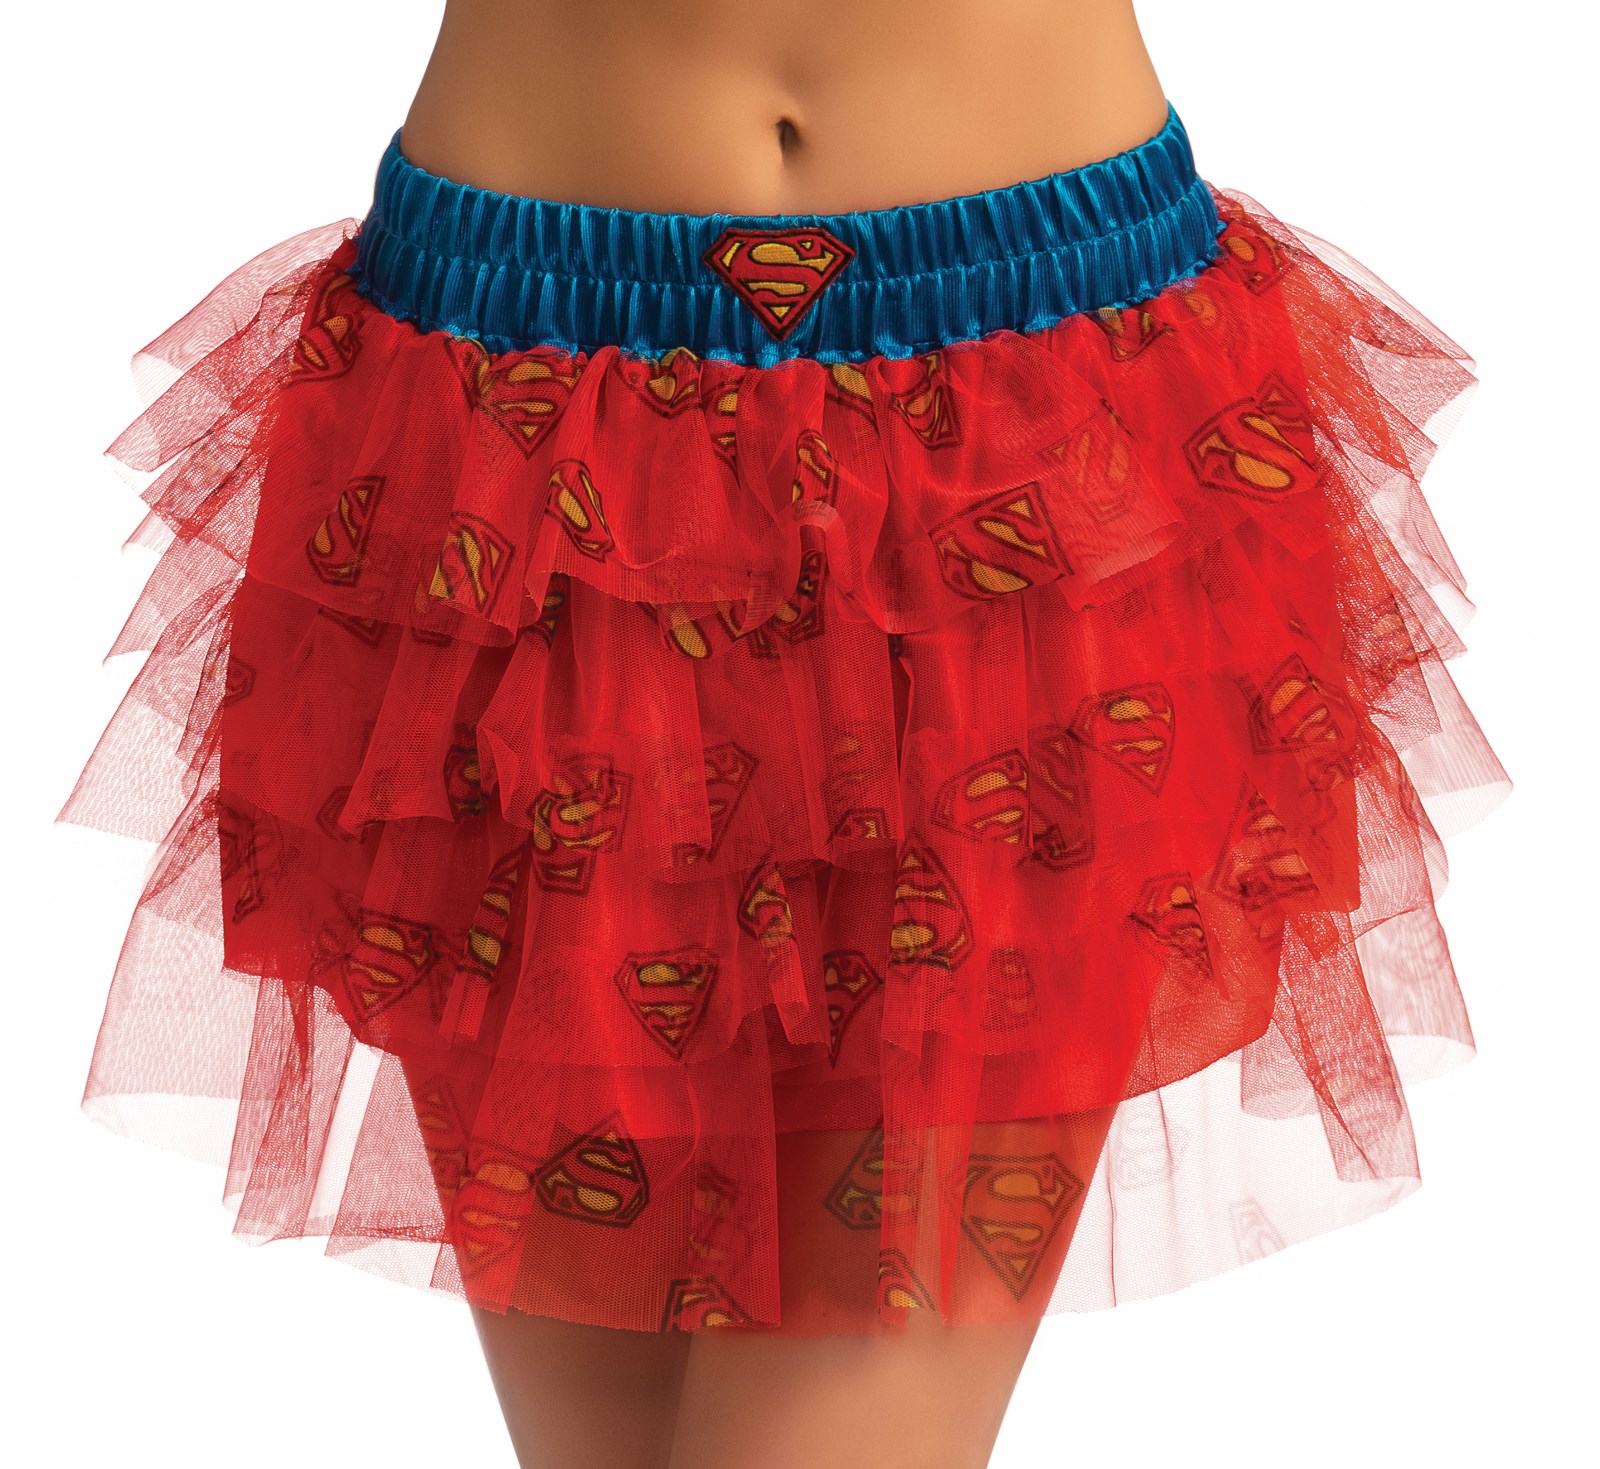 Supergirl Tutu Skirt For Women